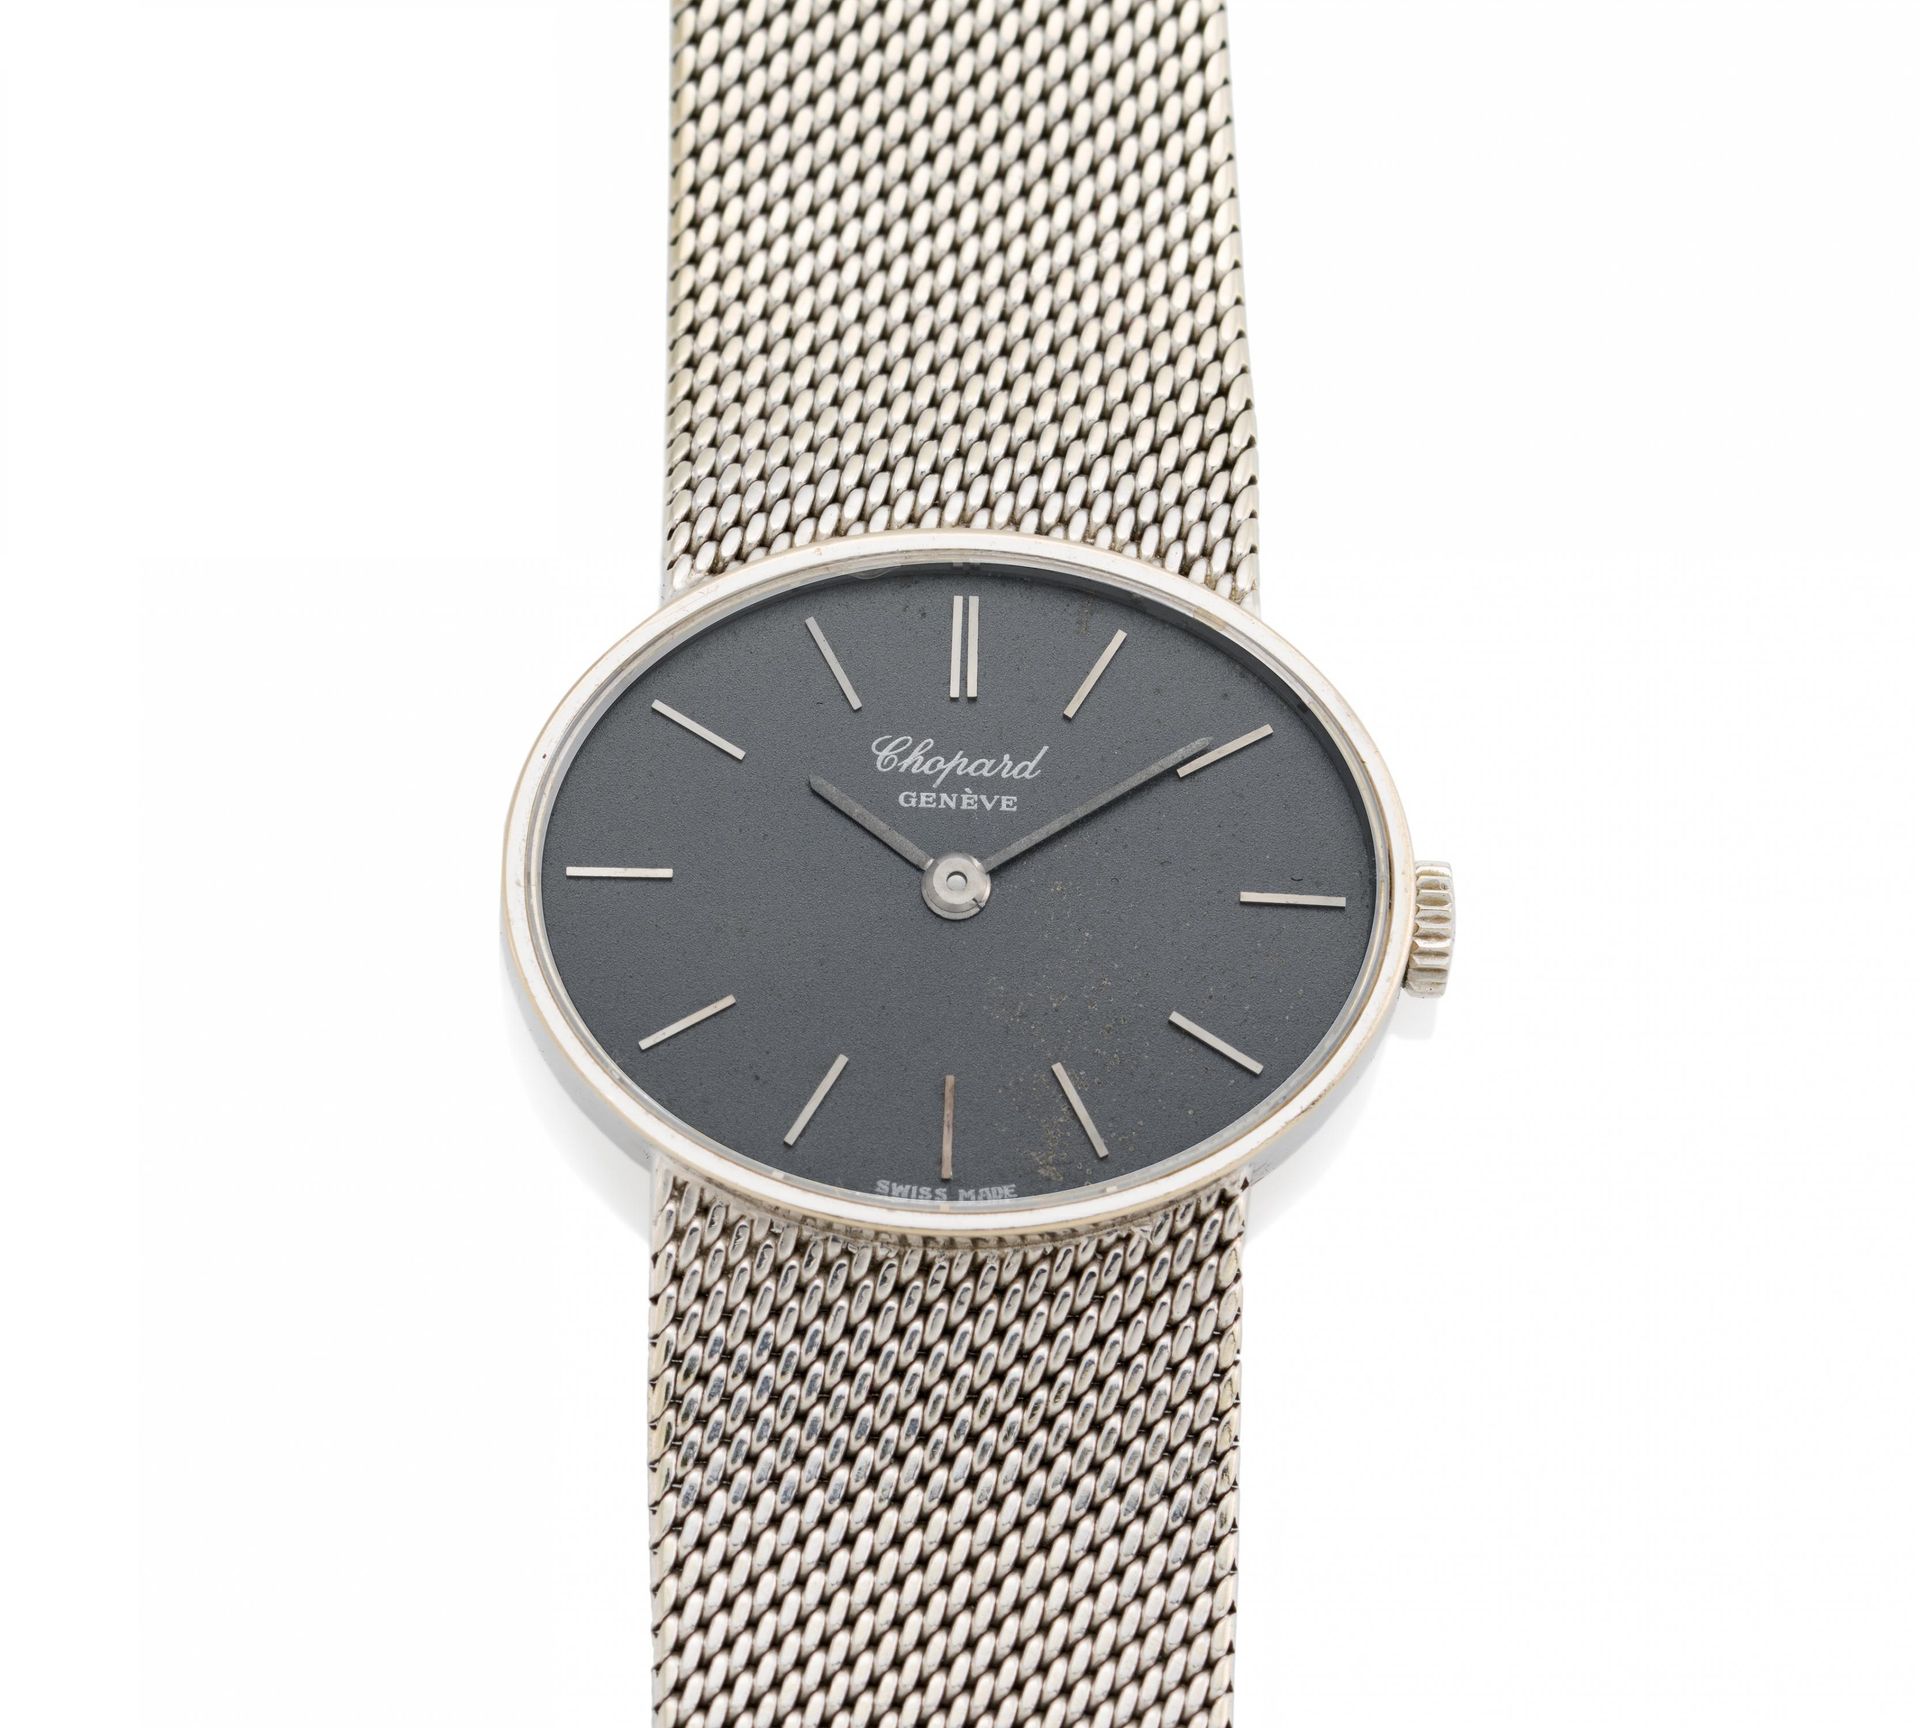 CHOPARD CHOPARD
Geneve。手表。

原产地。 瑞士，日内瓦。
日期： 约1960/1970年。
发条。手 动上链。
表壳/表带： 750/-&hellip;